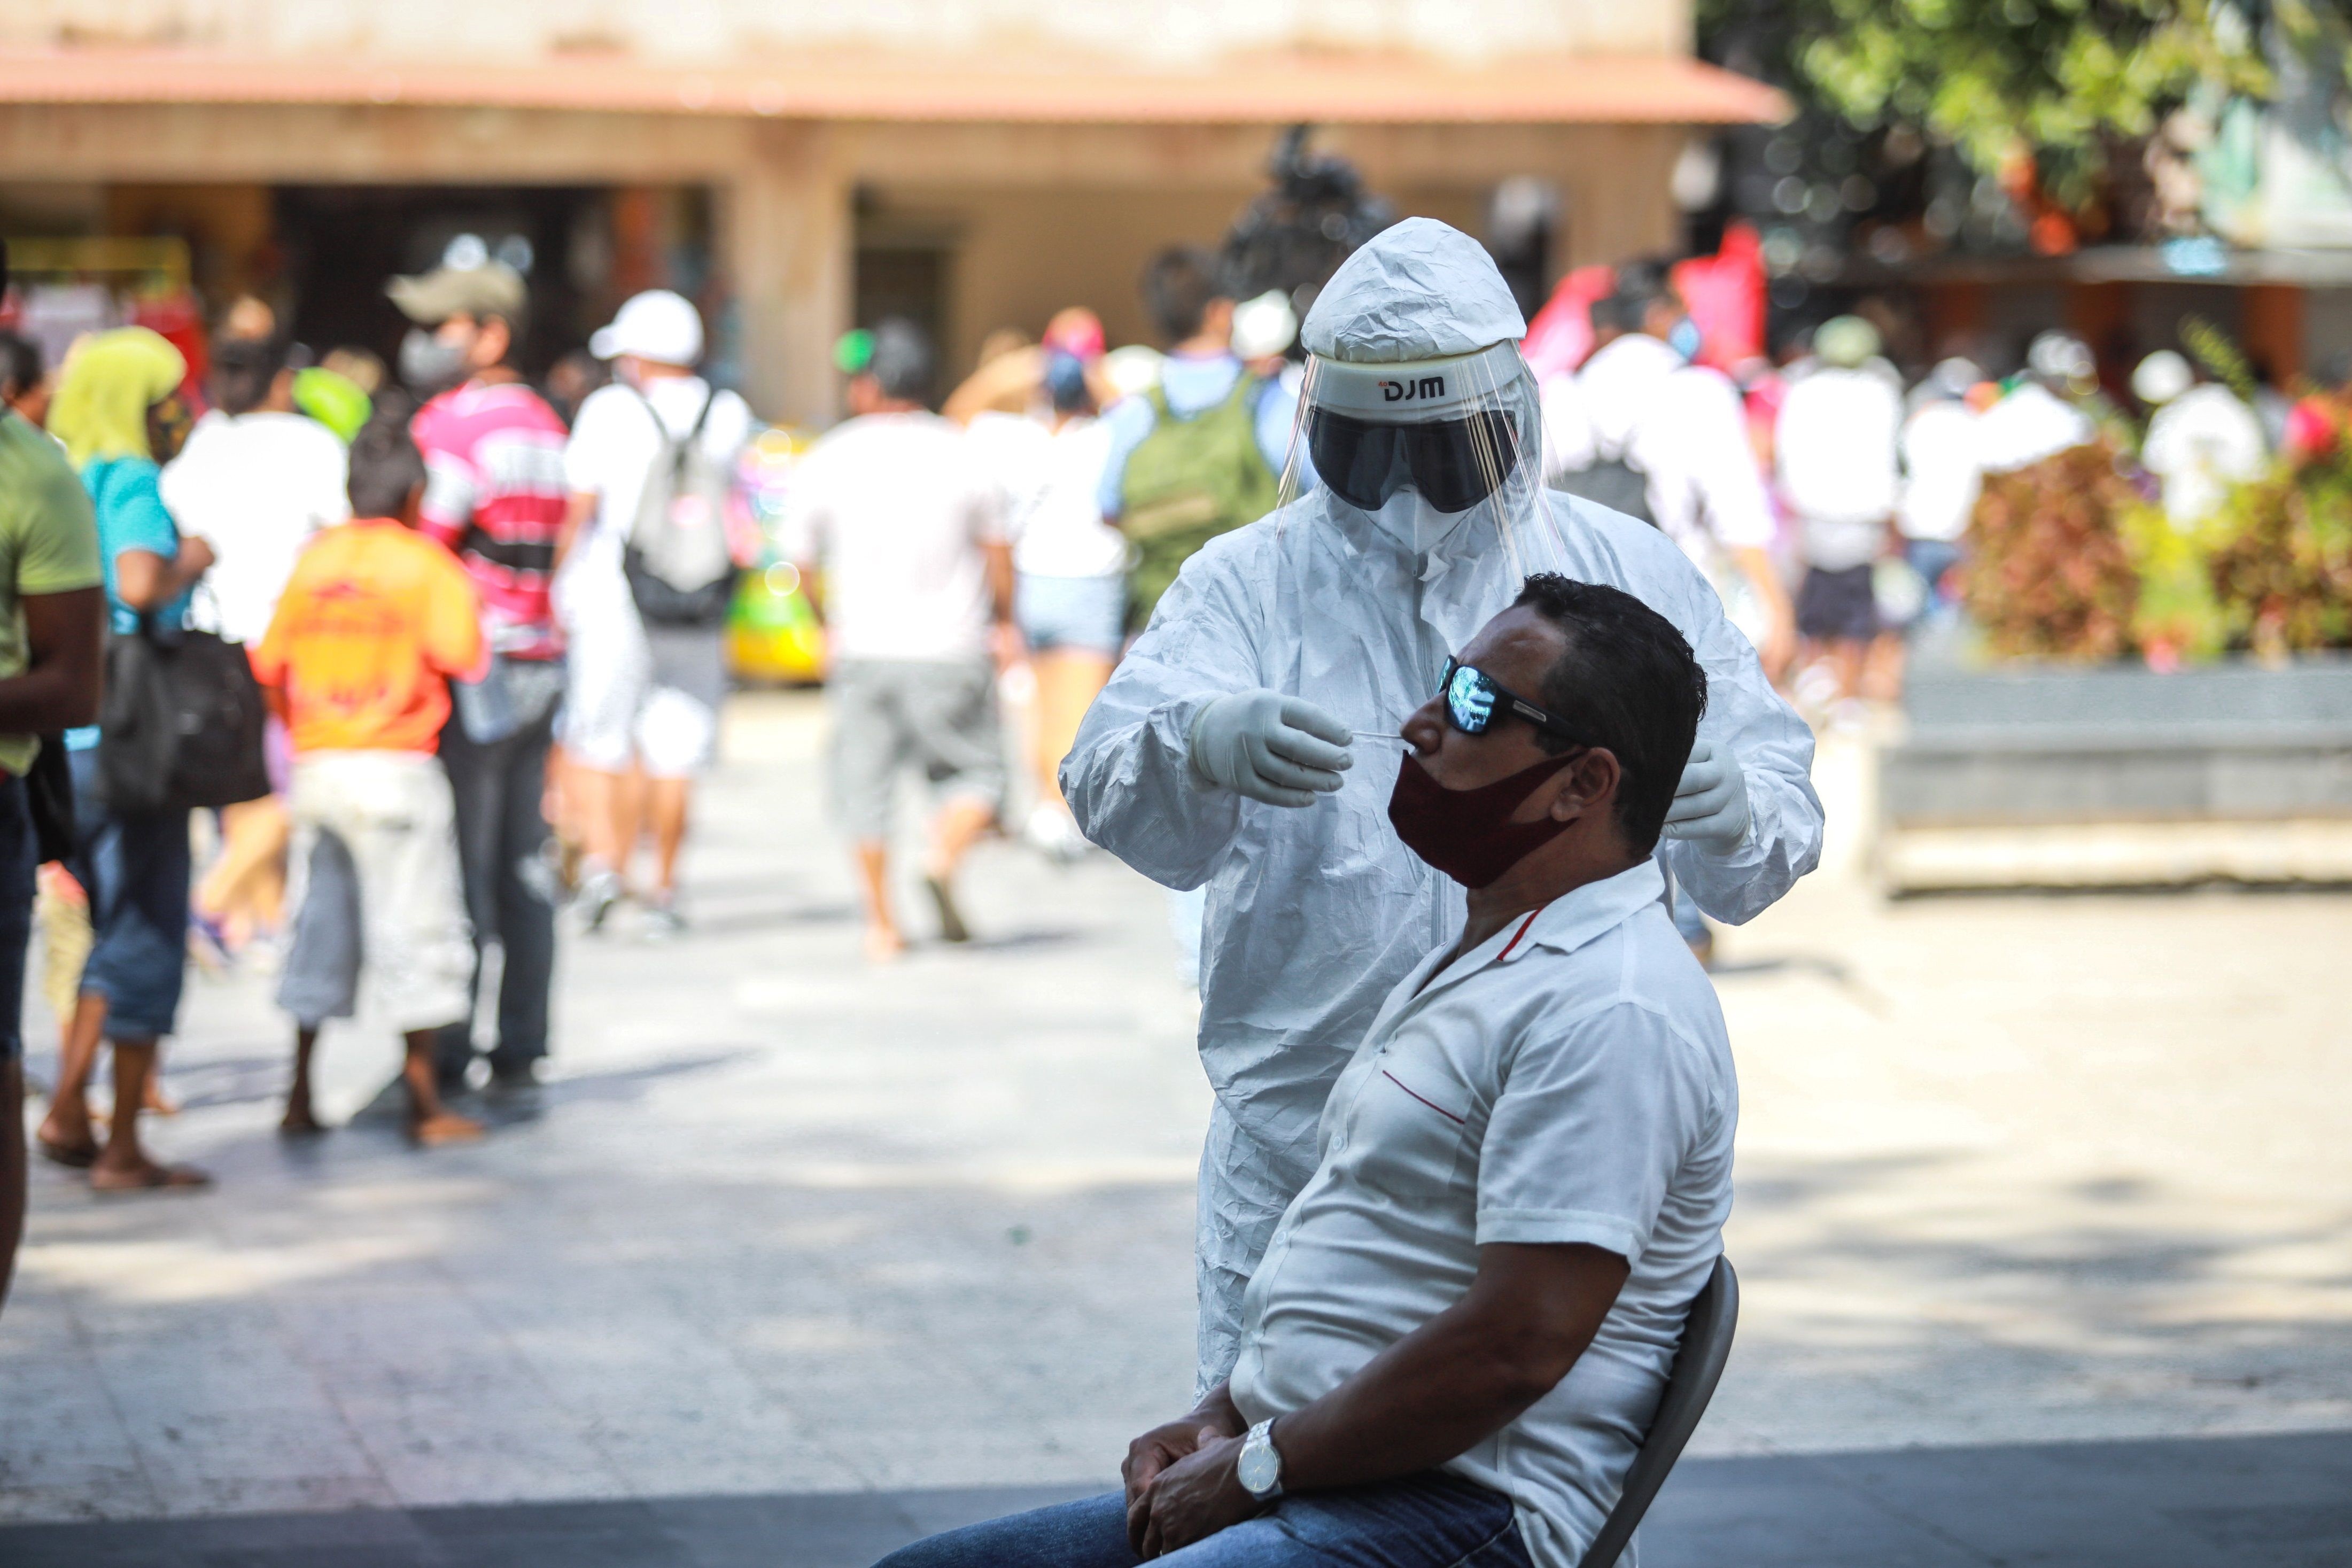 Al corte informativo del martes 13 de julio, la SSa reportó 2,604,711 casos totales y 235,277 muertes acumuladas de COVID-19 en México (Foto: EFE/ David Guzmán)
